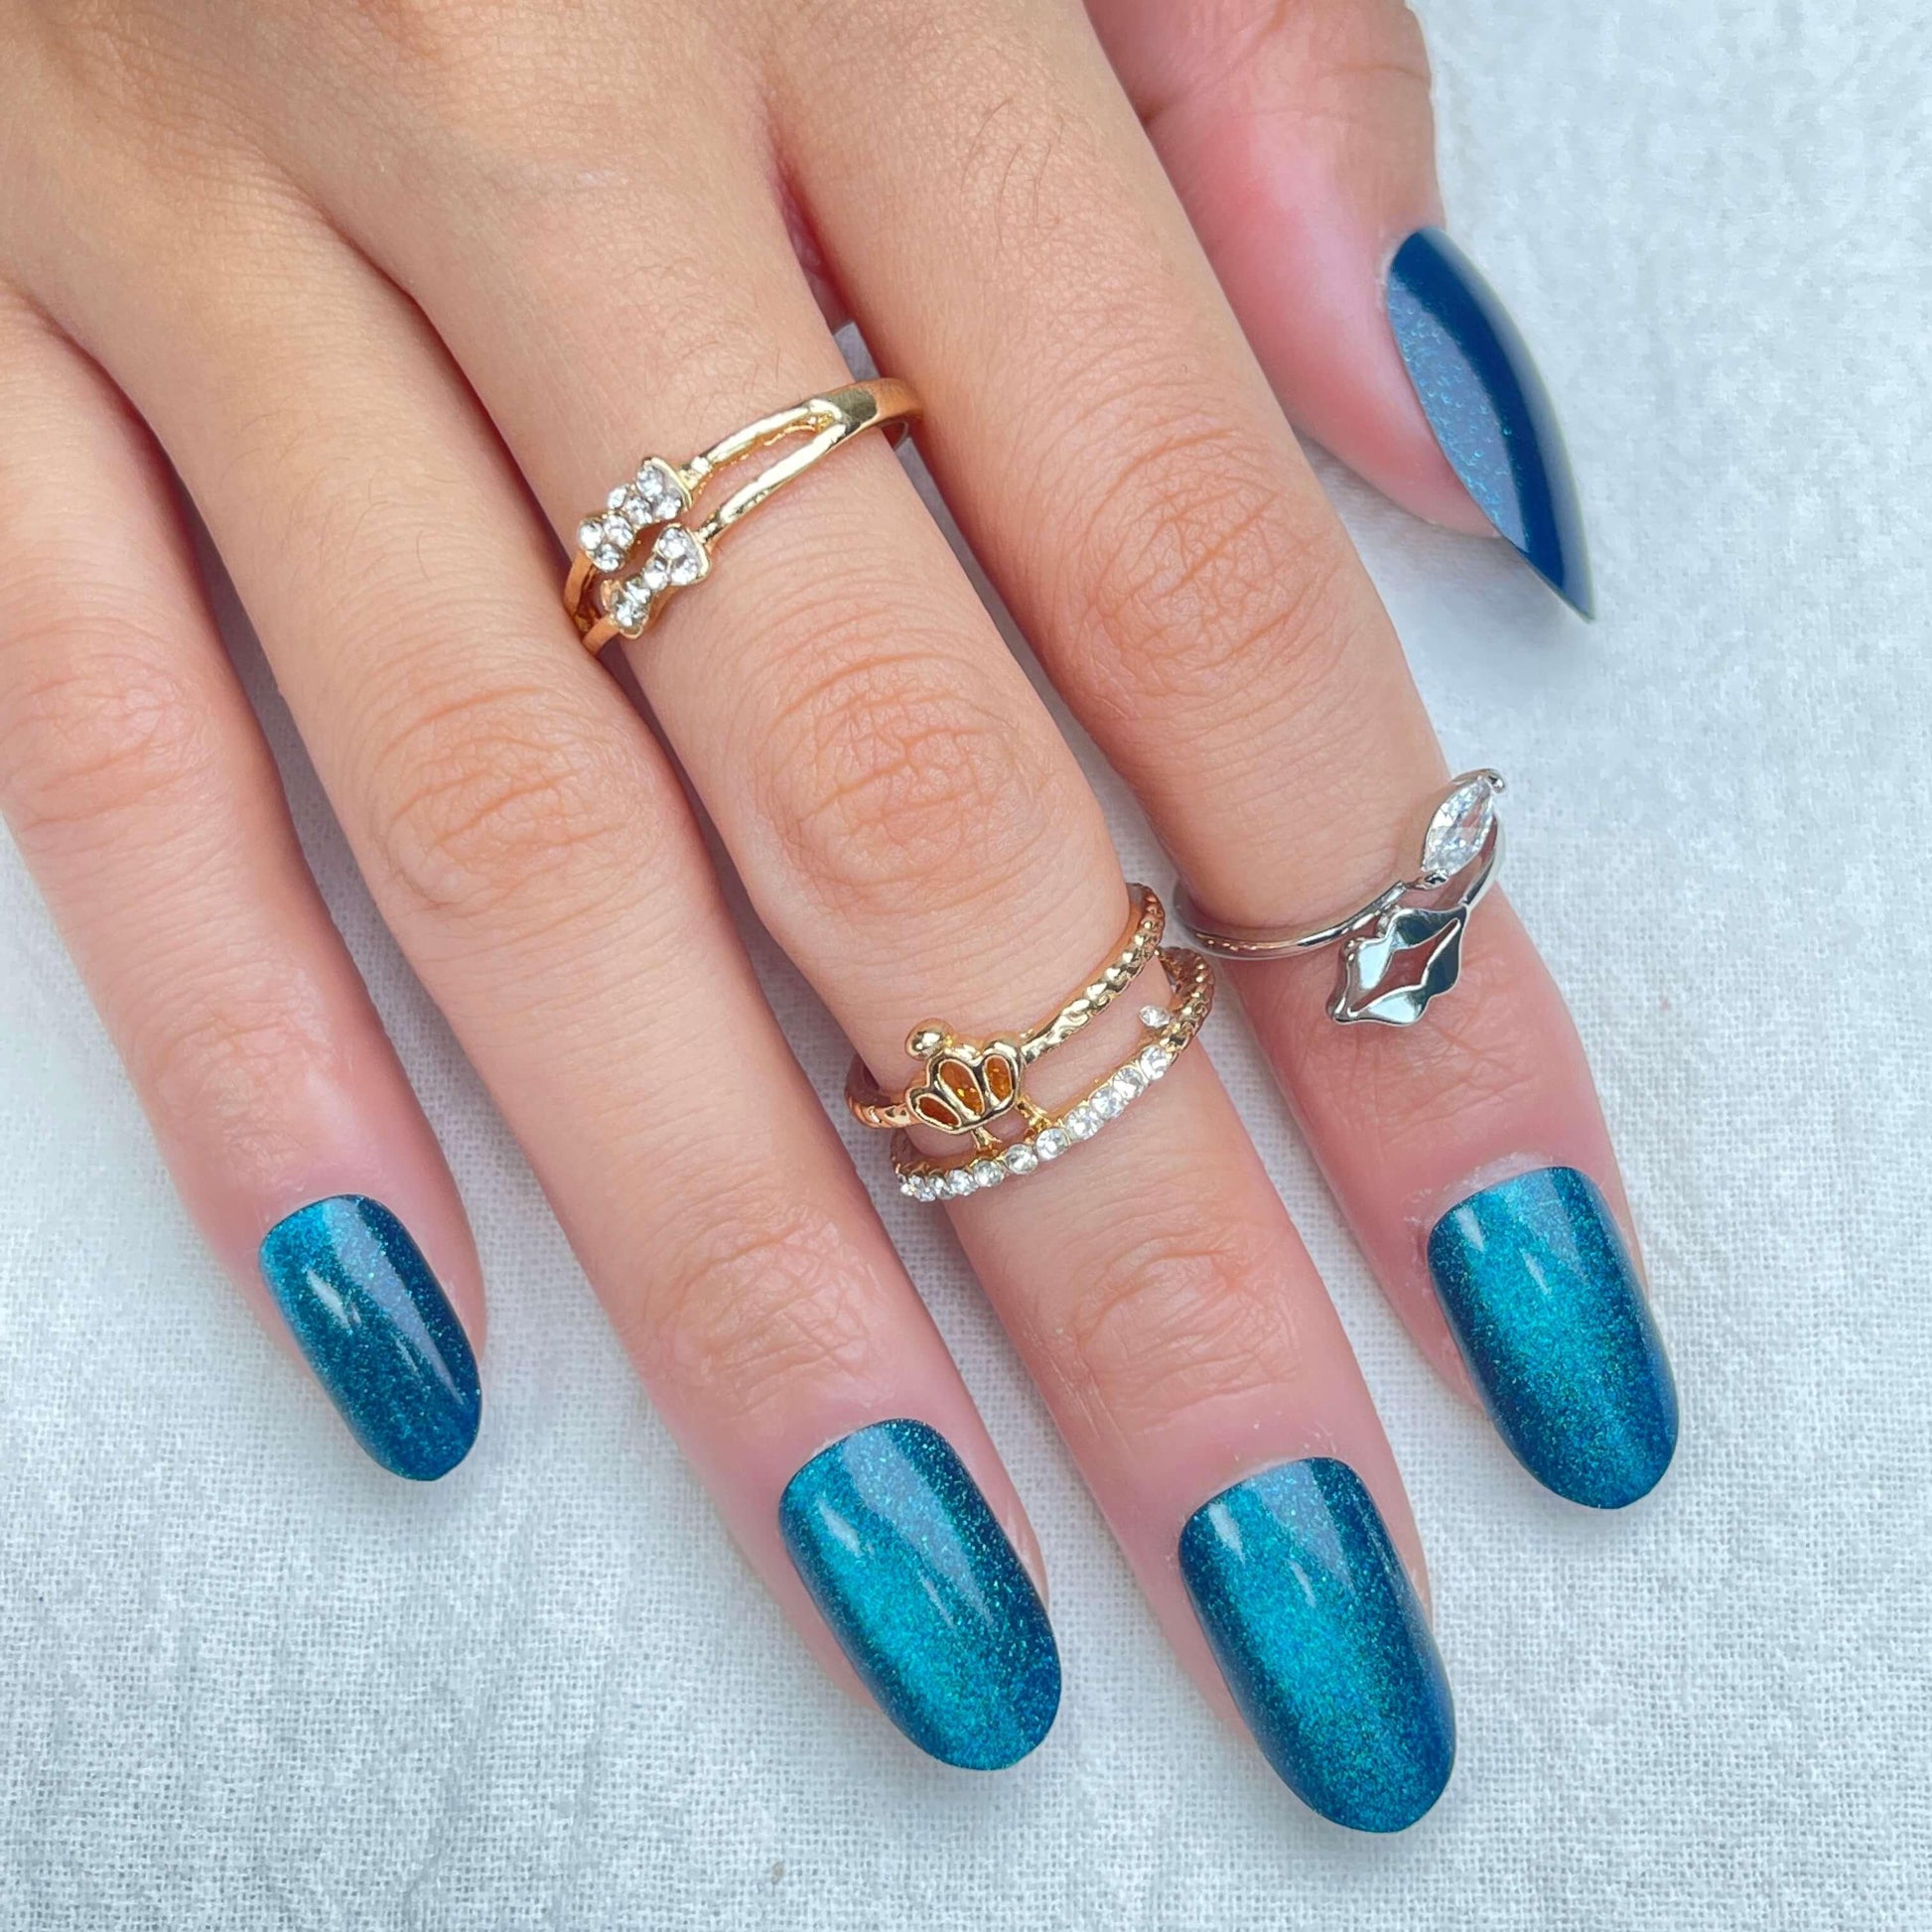 [FULL SET GLITTERING] Gems Glitter Mermaid’s Song Ocean Blue Medium Length Press On Nails - Belle Rose Nails